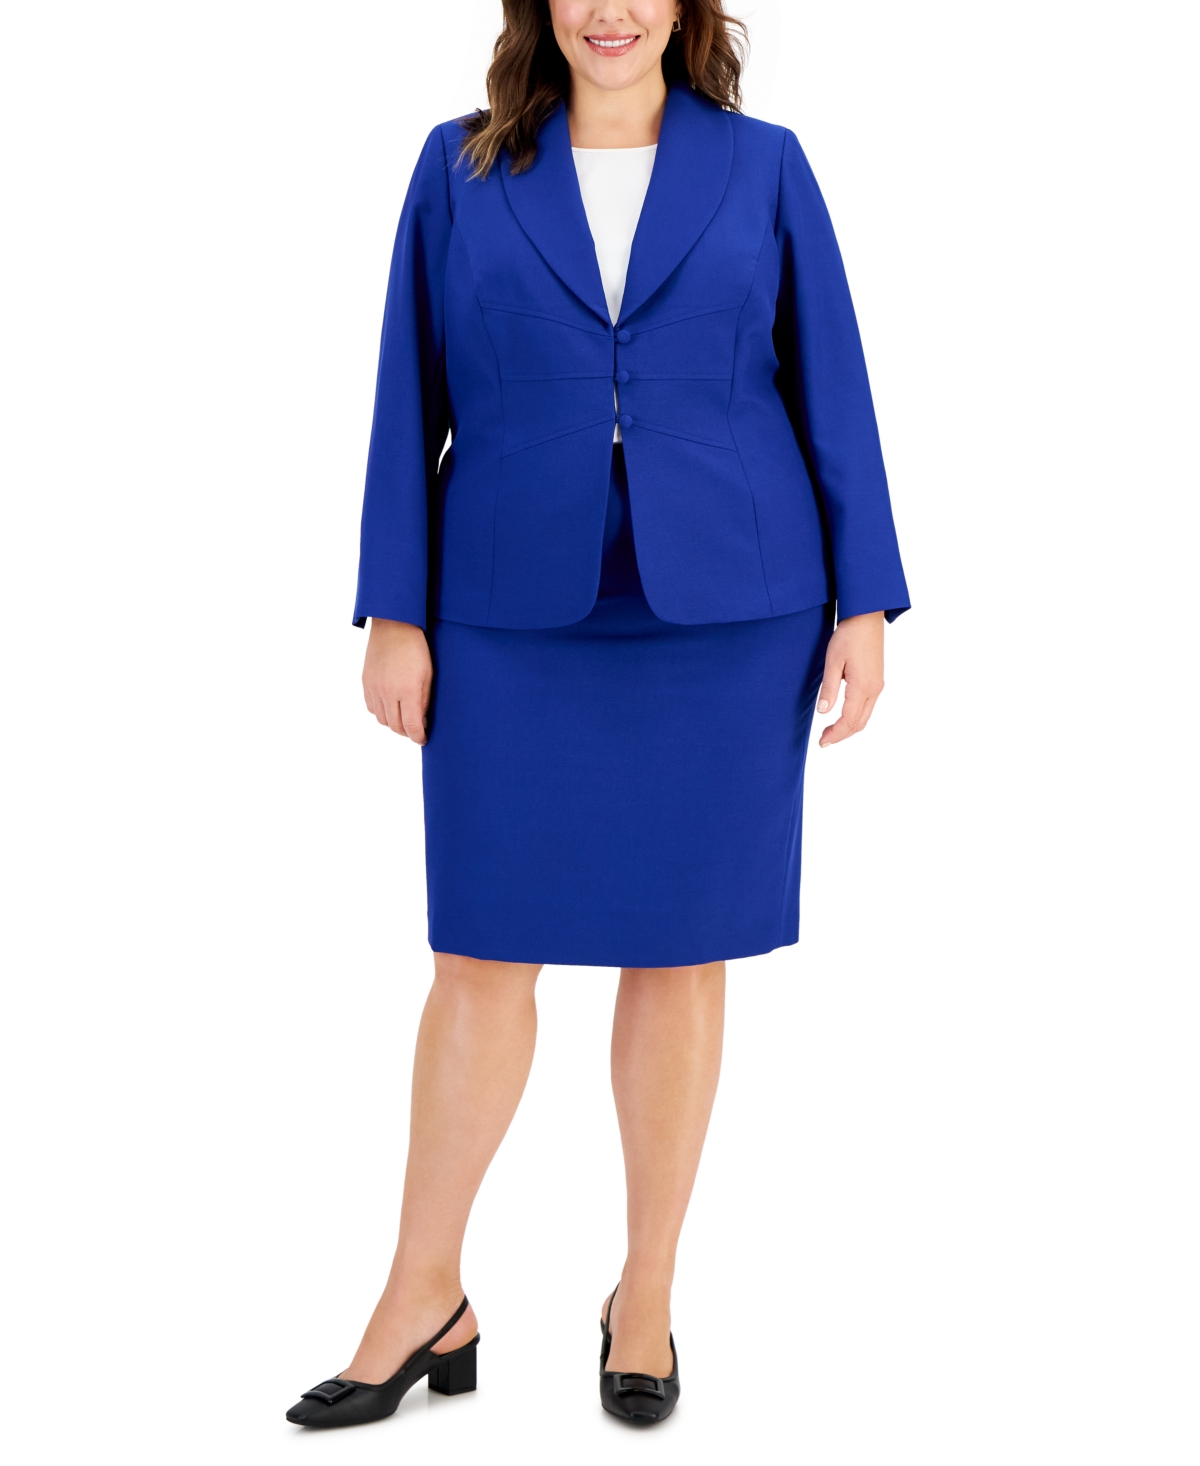 Le Suit Plus Size Seamed Crepe Jacket Slim Skirt Suit In Twilight Blue